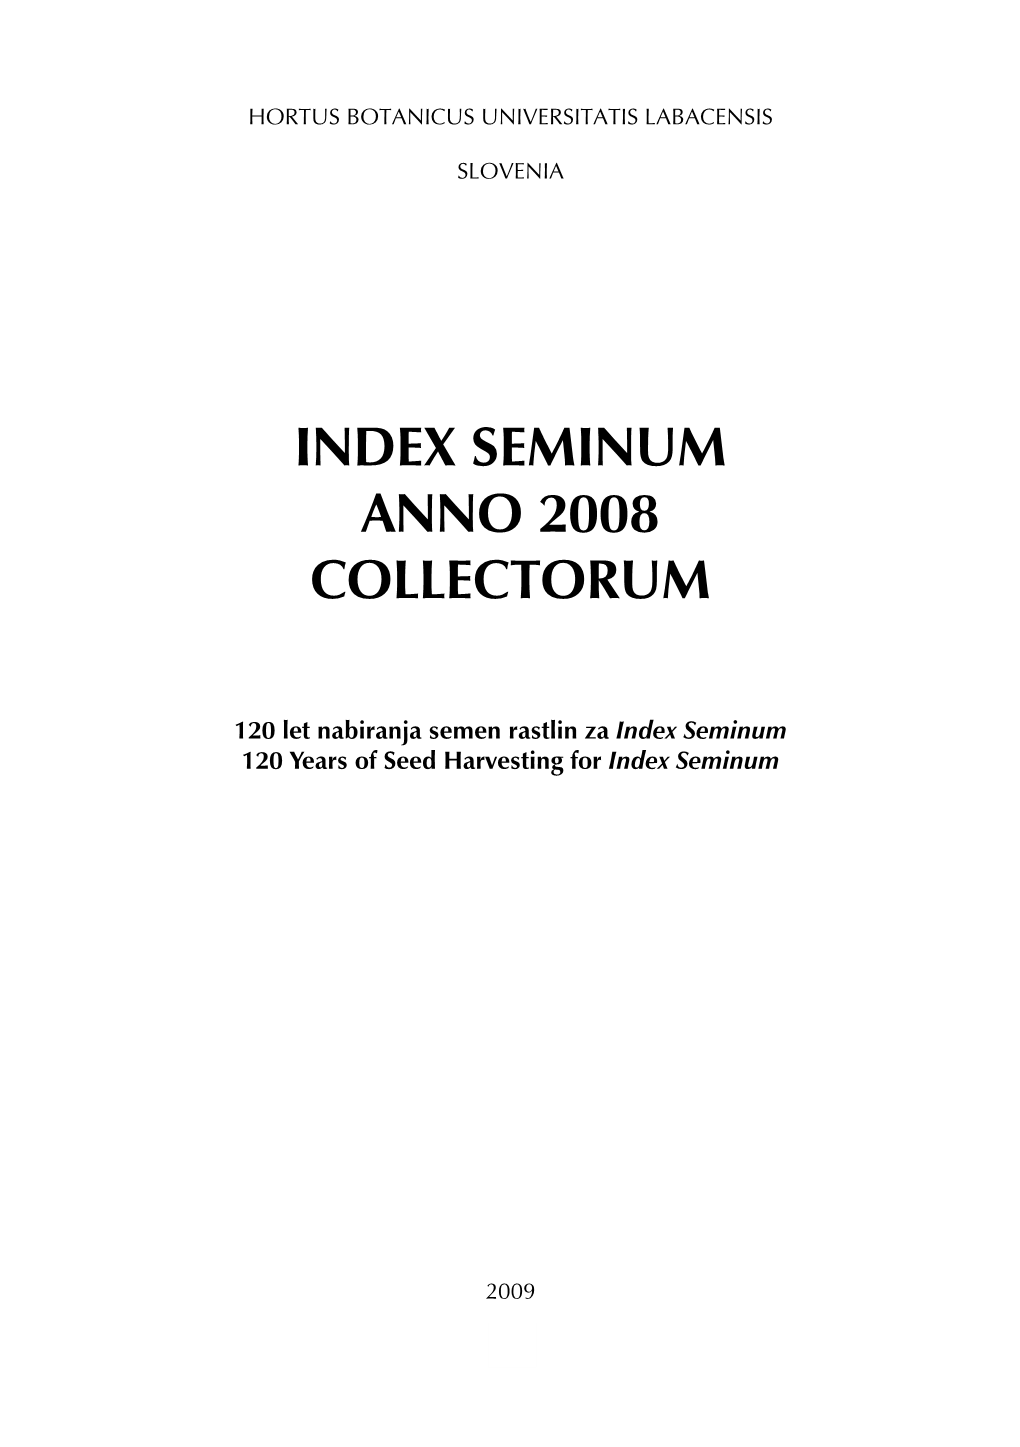 Seminum Anno 2008 Collectorum